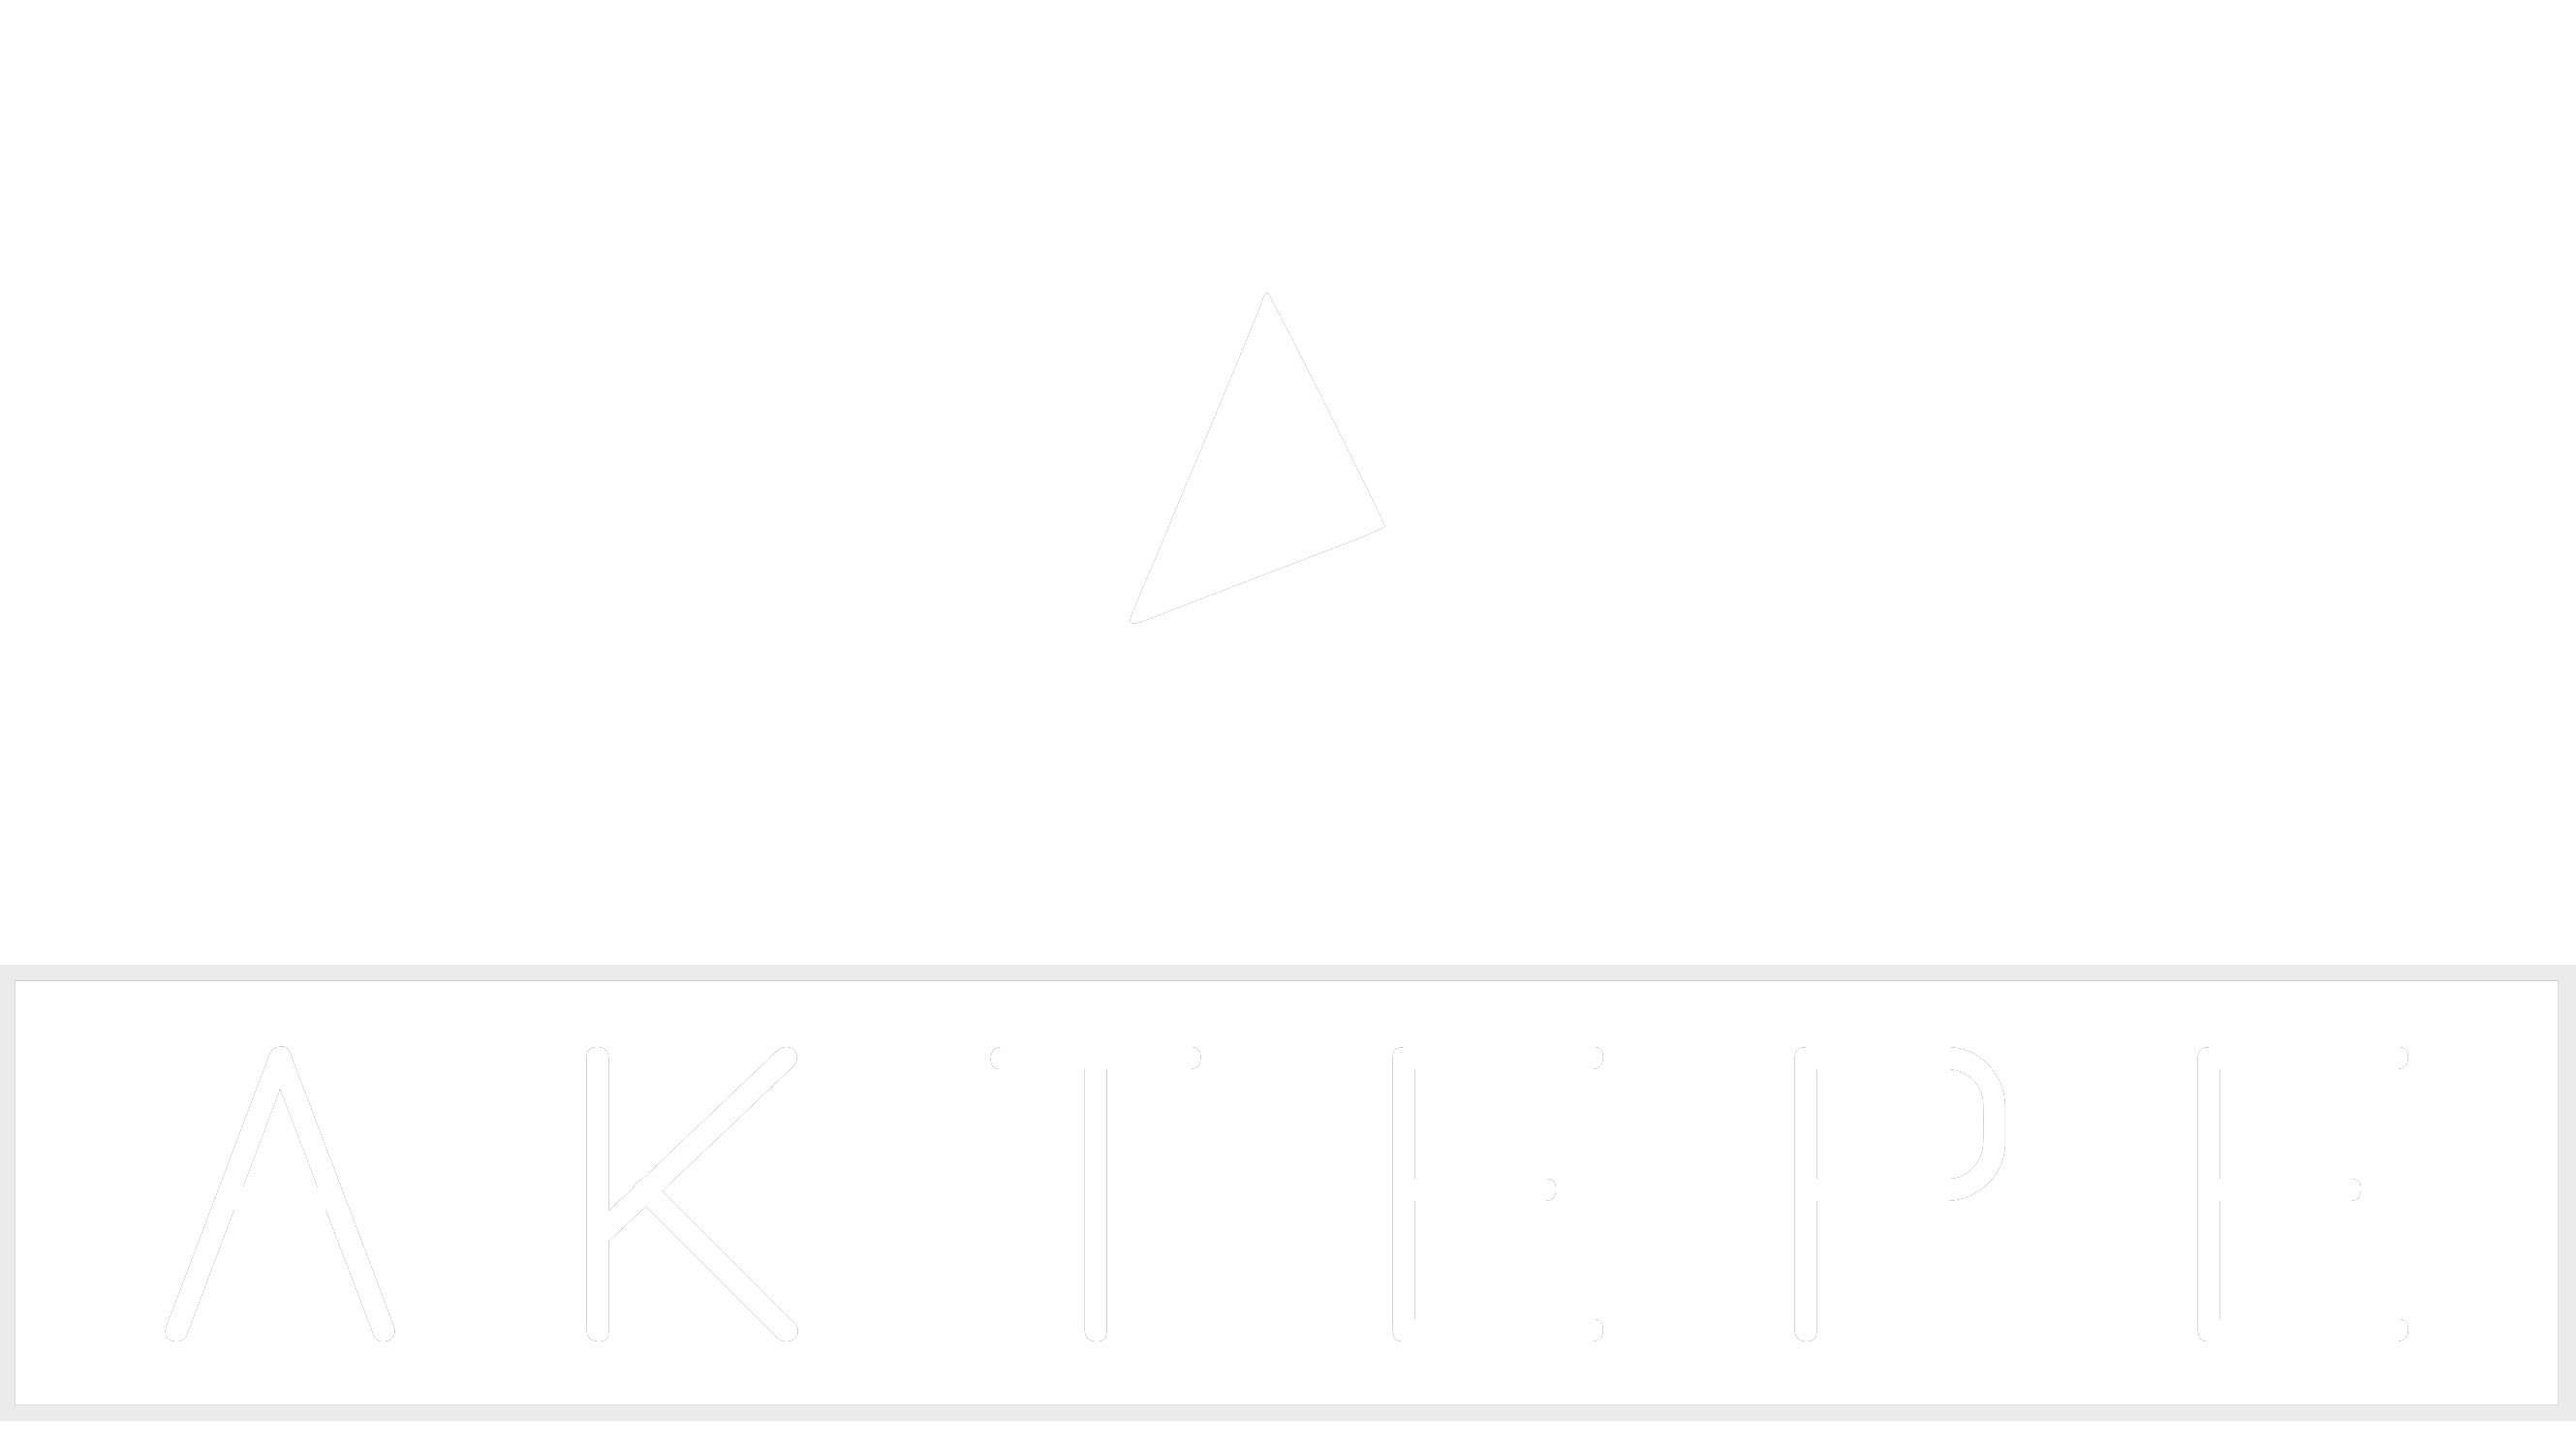 SRX - Aktepe Shop - Oto Müzik Görüntü Navigasyon Sistemleri ve Teyp Çerçevesi Satış Merkezi